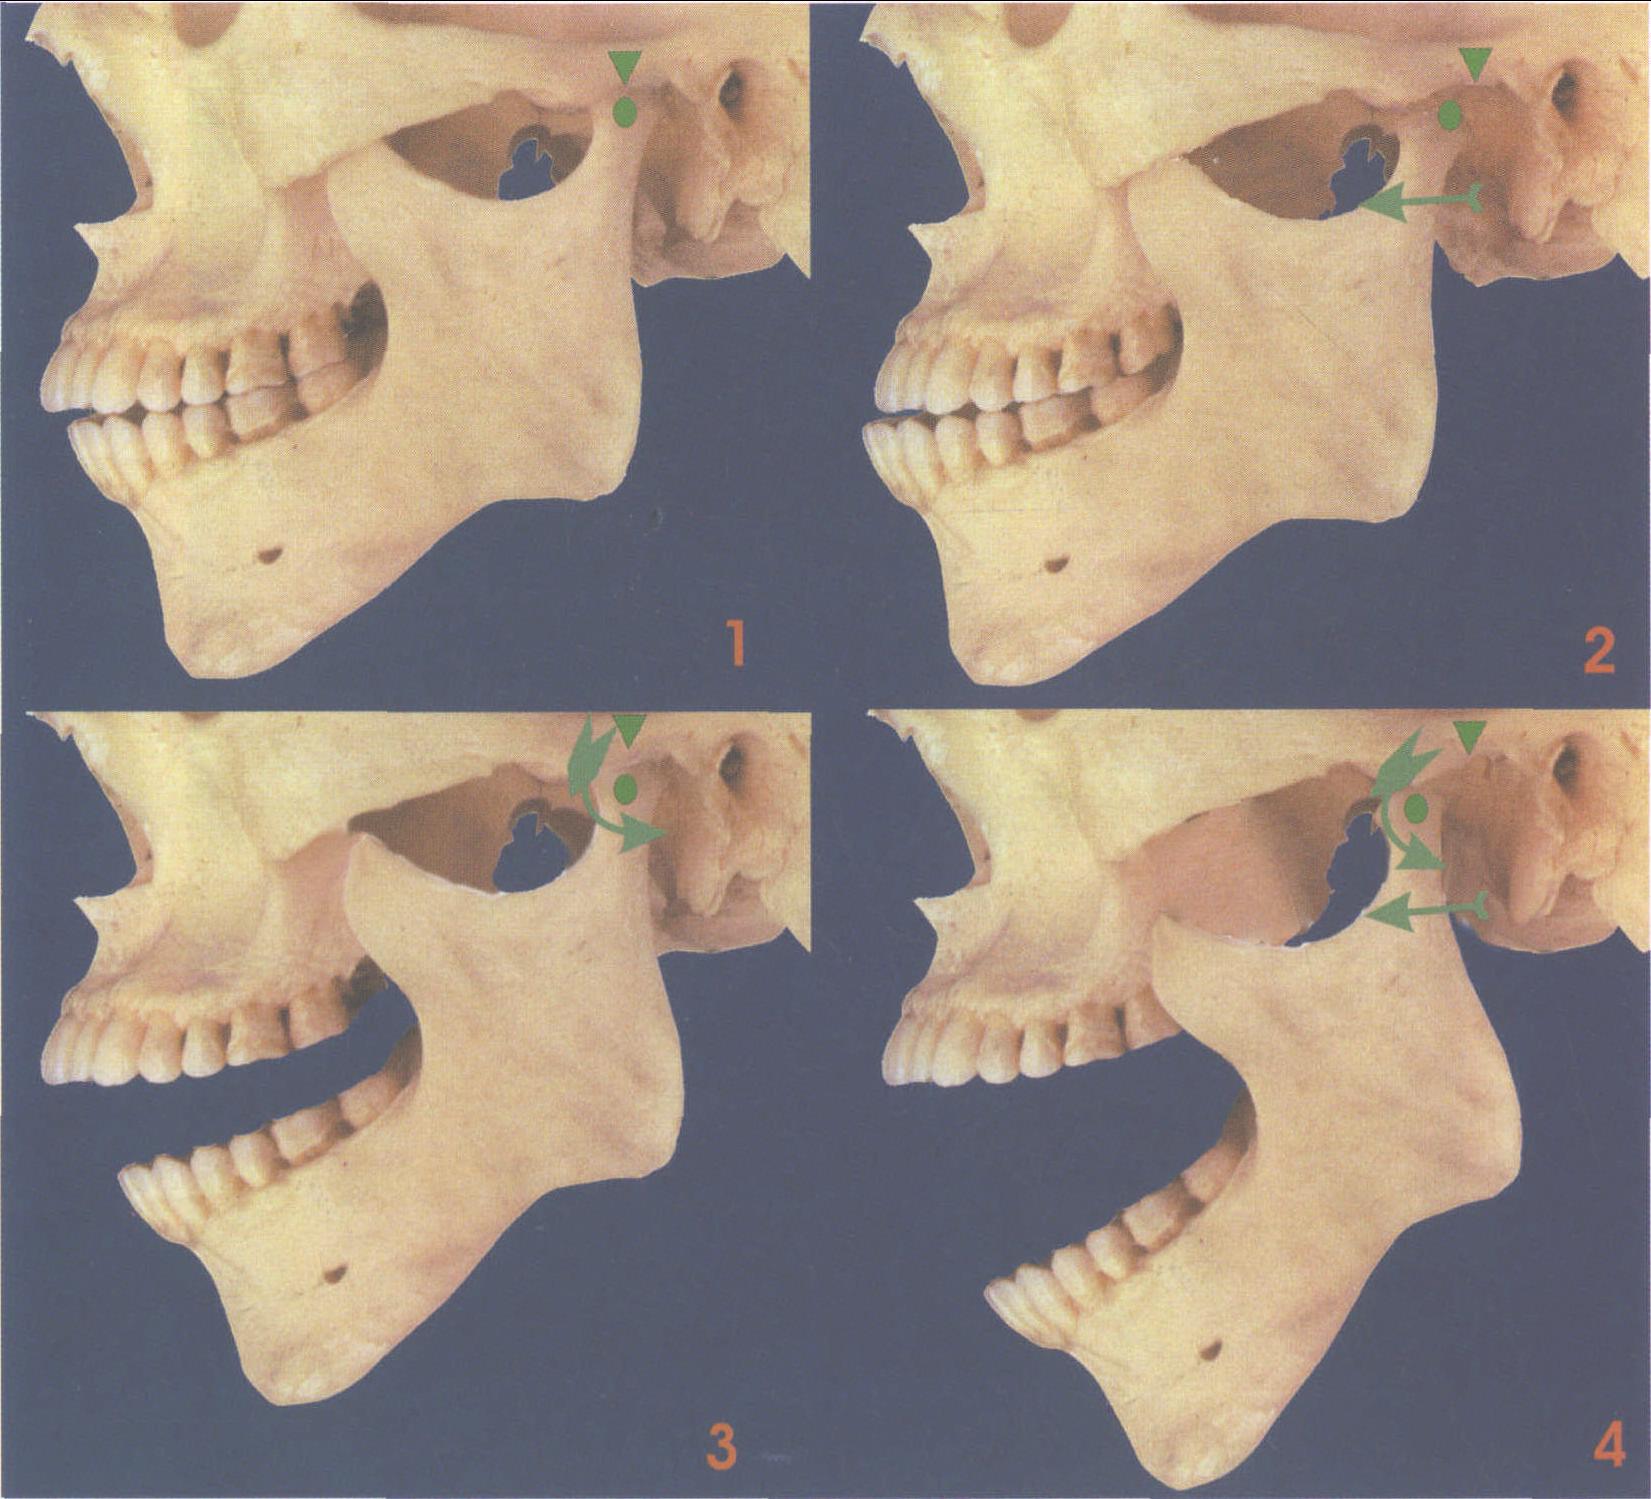 39.下颌骨 (外侧面观)-系统解剖学-医学